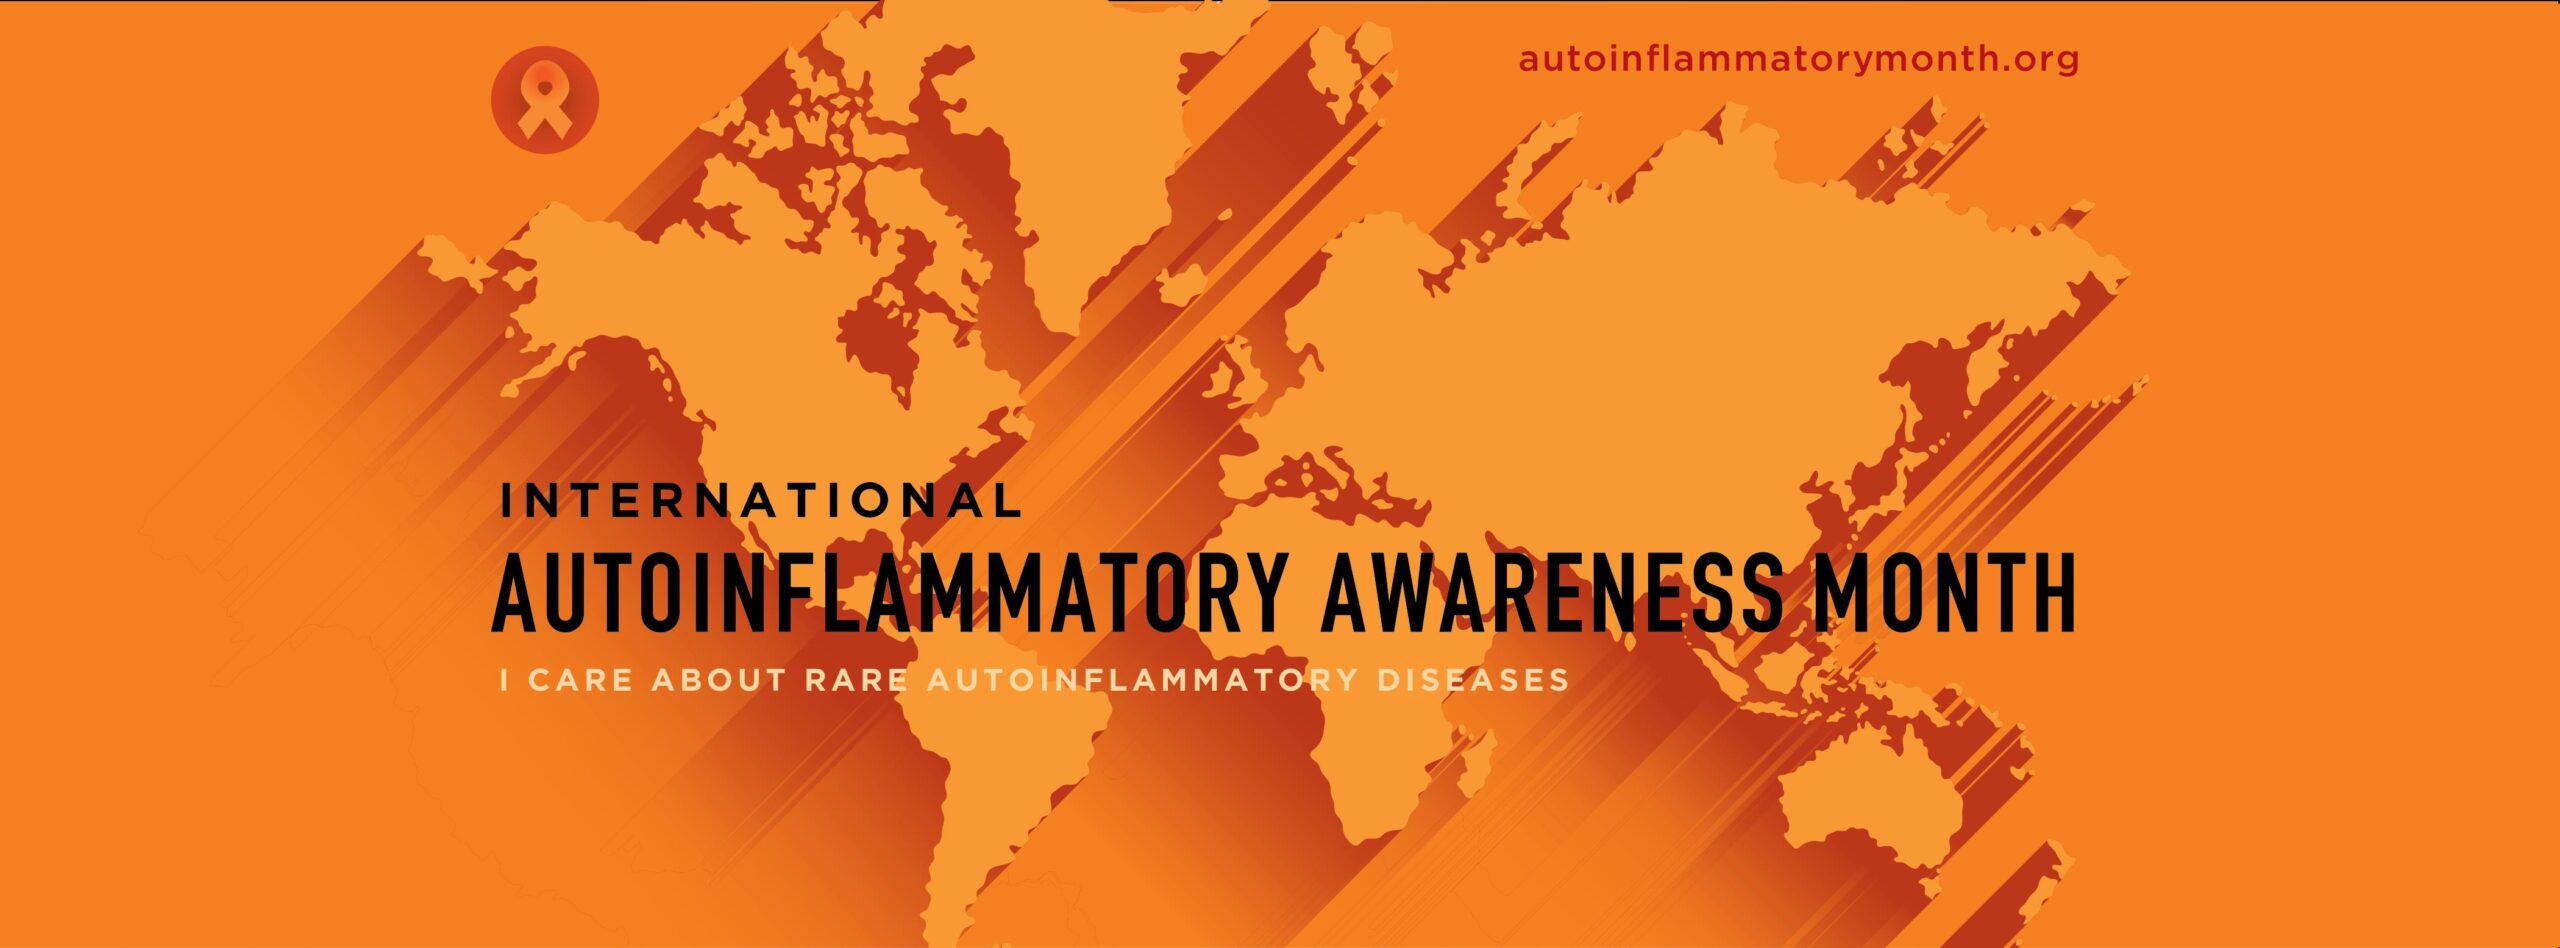 Cartel del Mes Internacional de Concienciación de los Autoinflamatorios